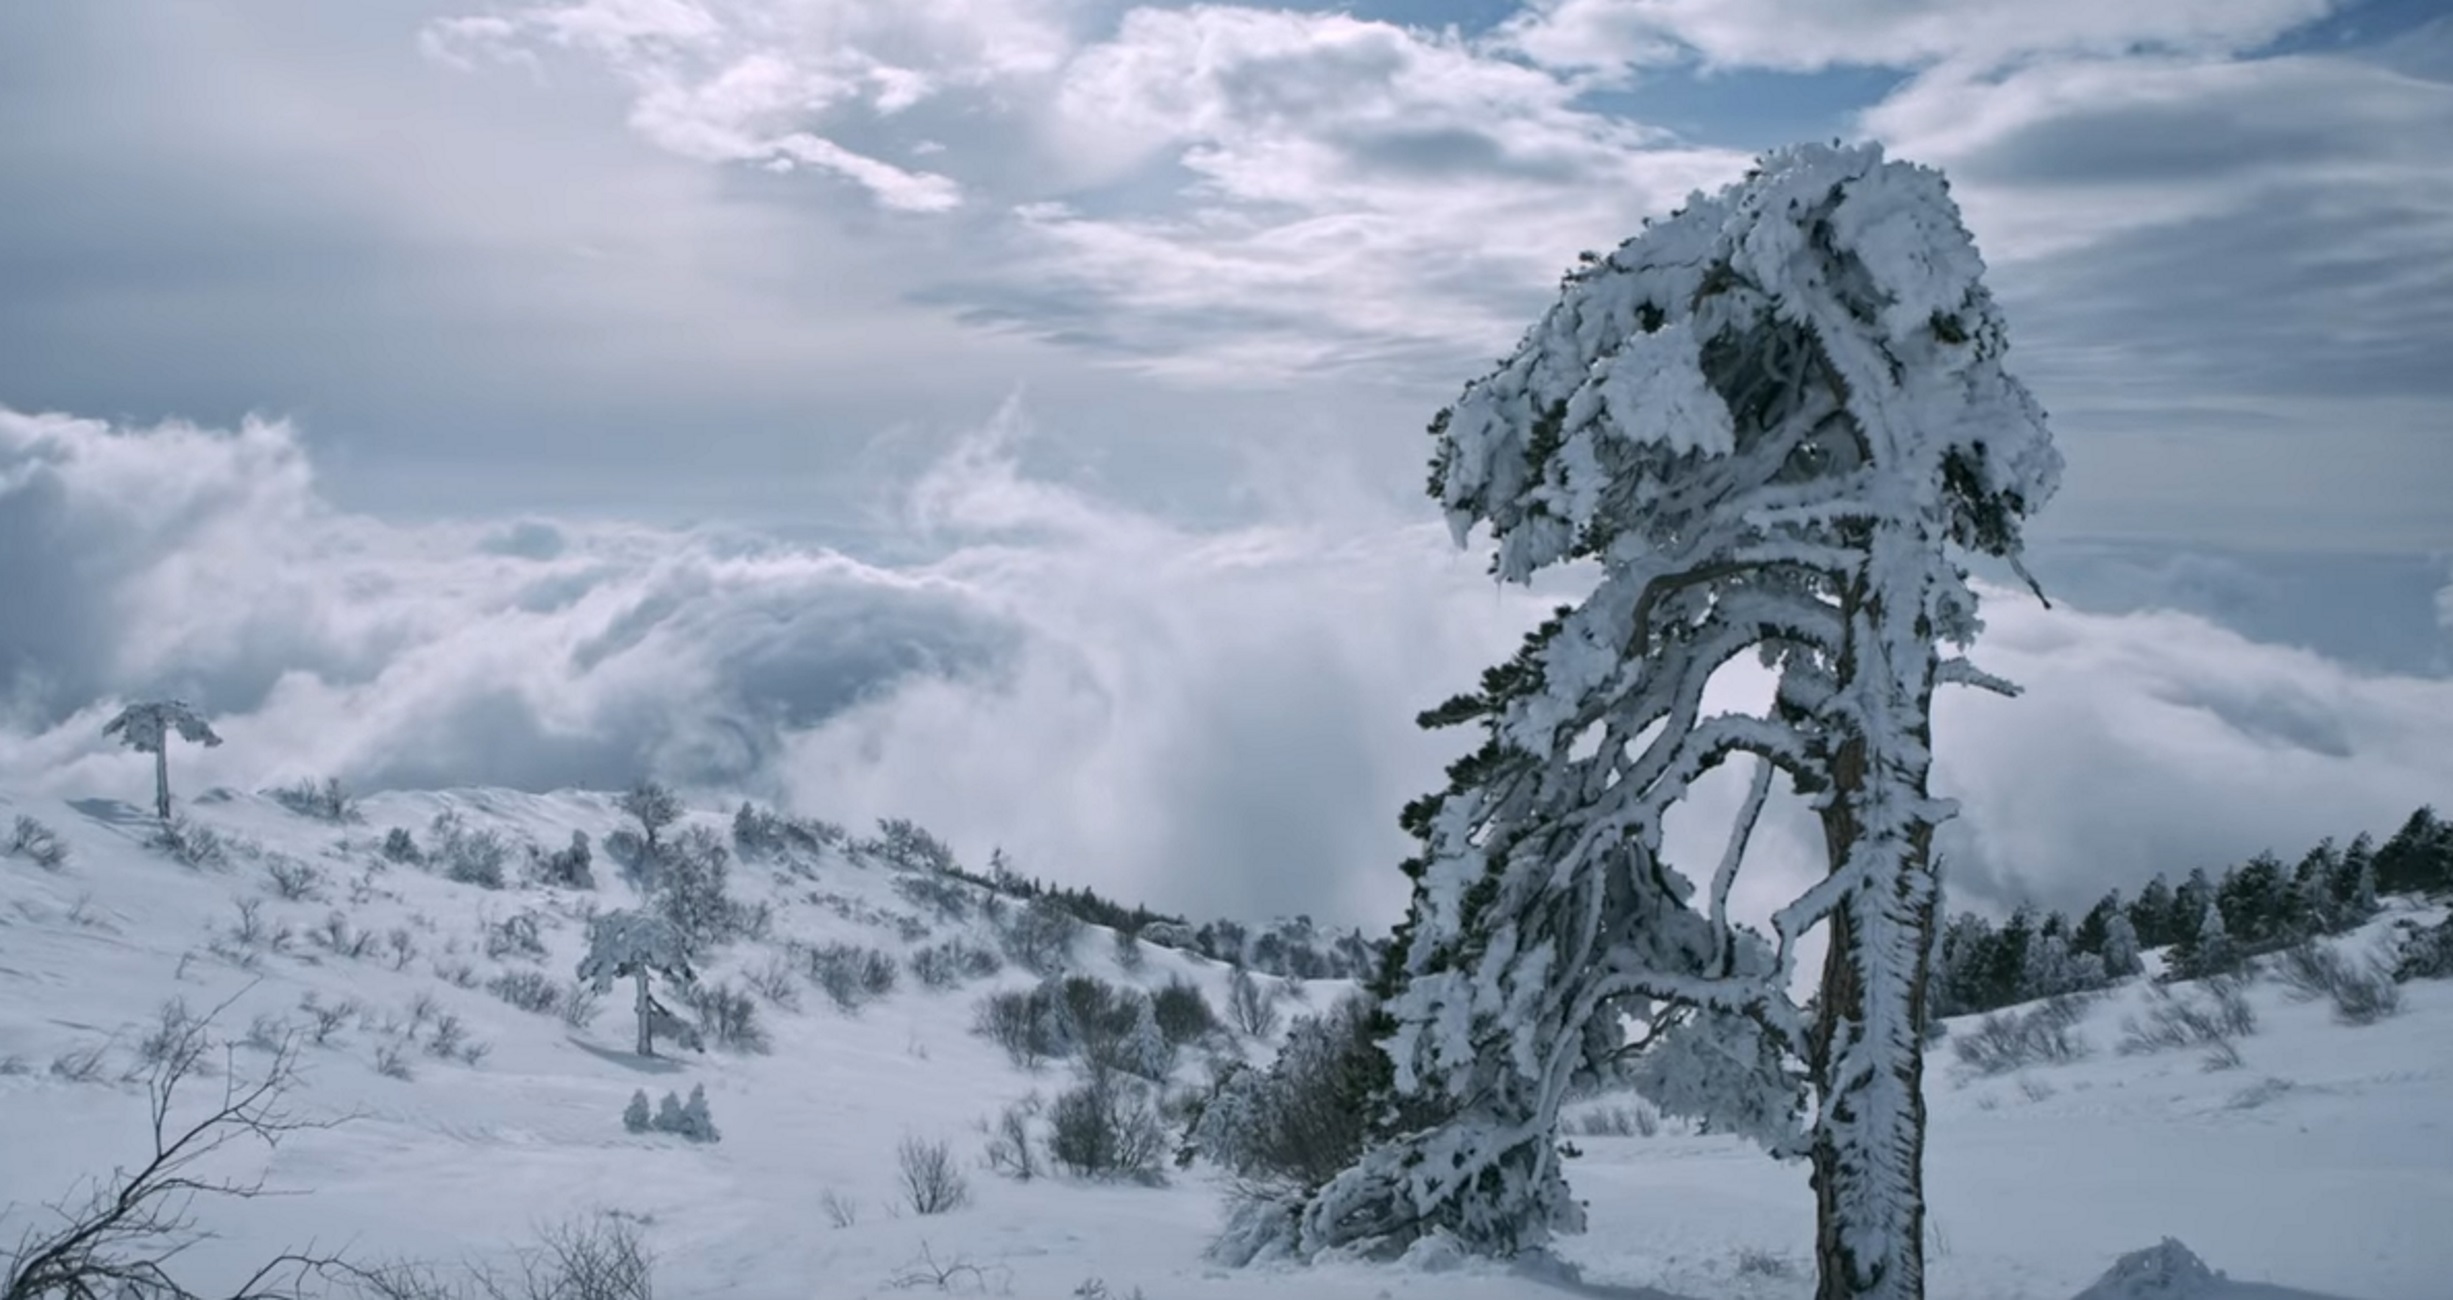 Άγιο Όρος: Εκπληκτικές εικόνες που οι περισσότεροι δεν έχουν δει – Το τρέιλερ της νέας καθηλωτικής ταινίας